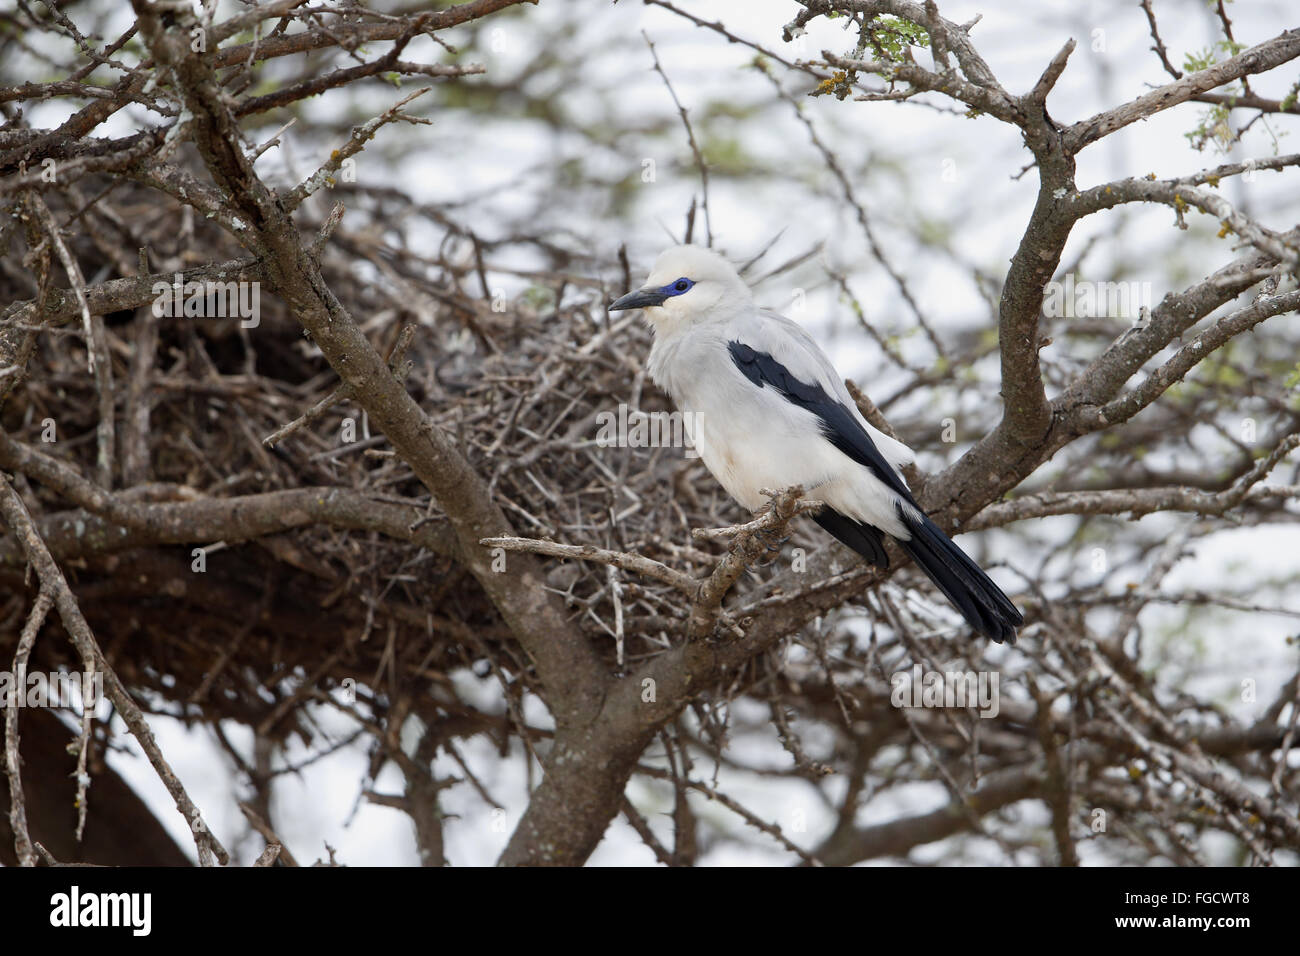 Stresemann Bushcrow (Zavattariornis Stresemanni) Erwachsenen, thront am Nest, Yabello, Borana Zone, Oromia Region, Äthiopien, November Stockfoto